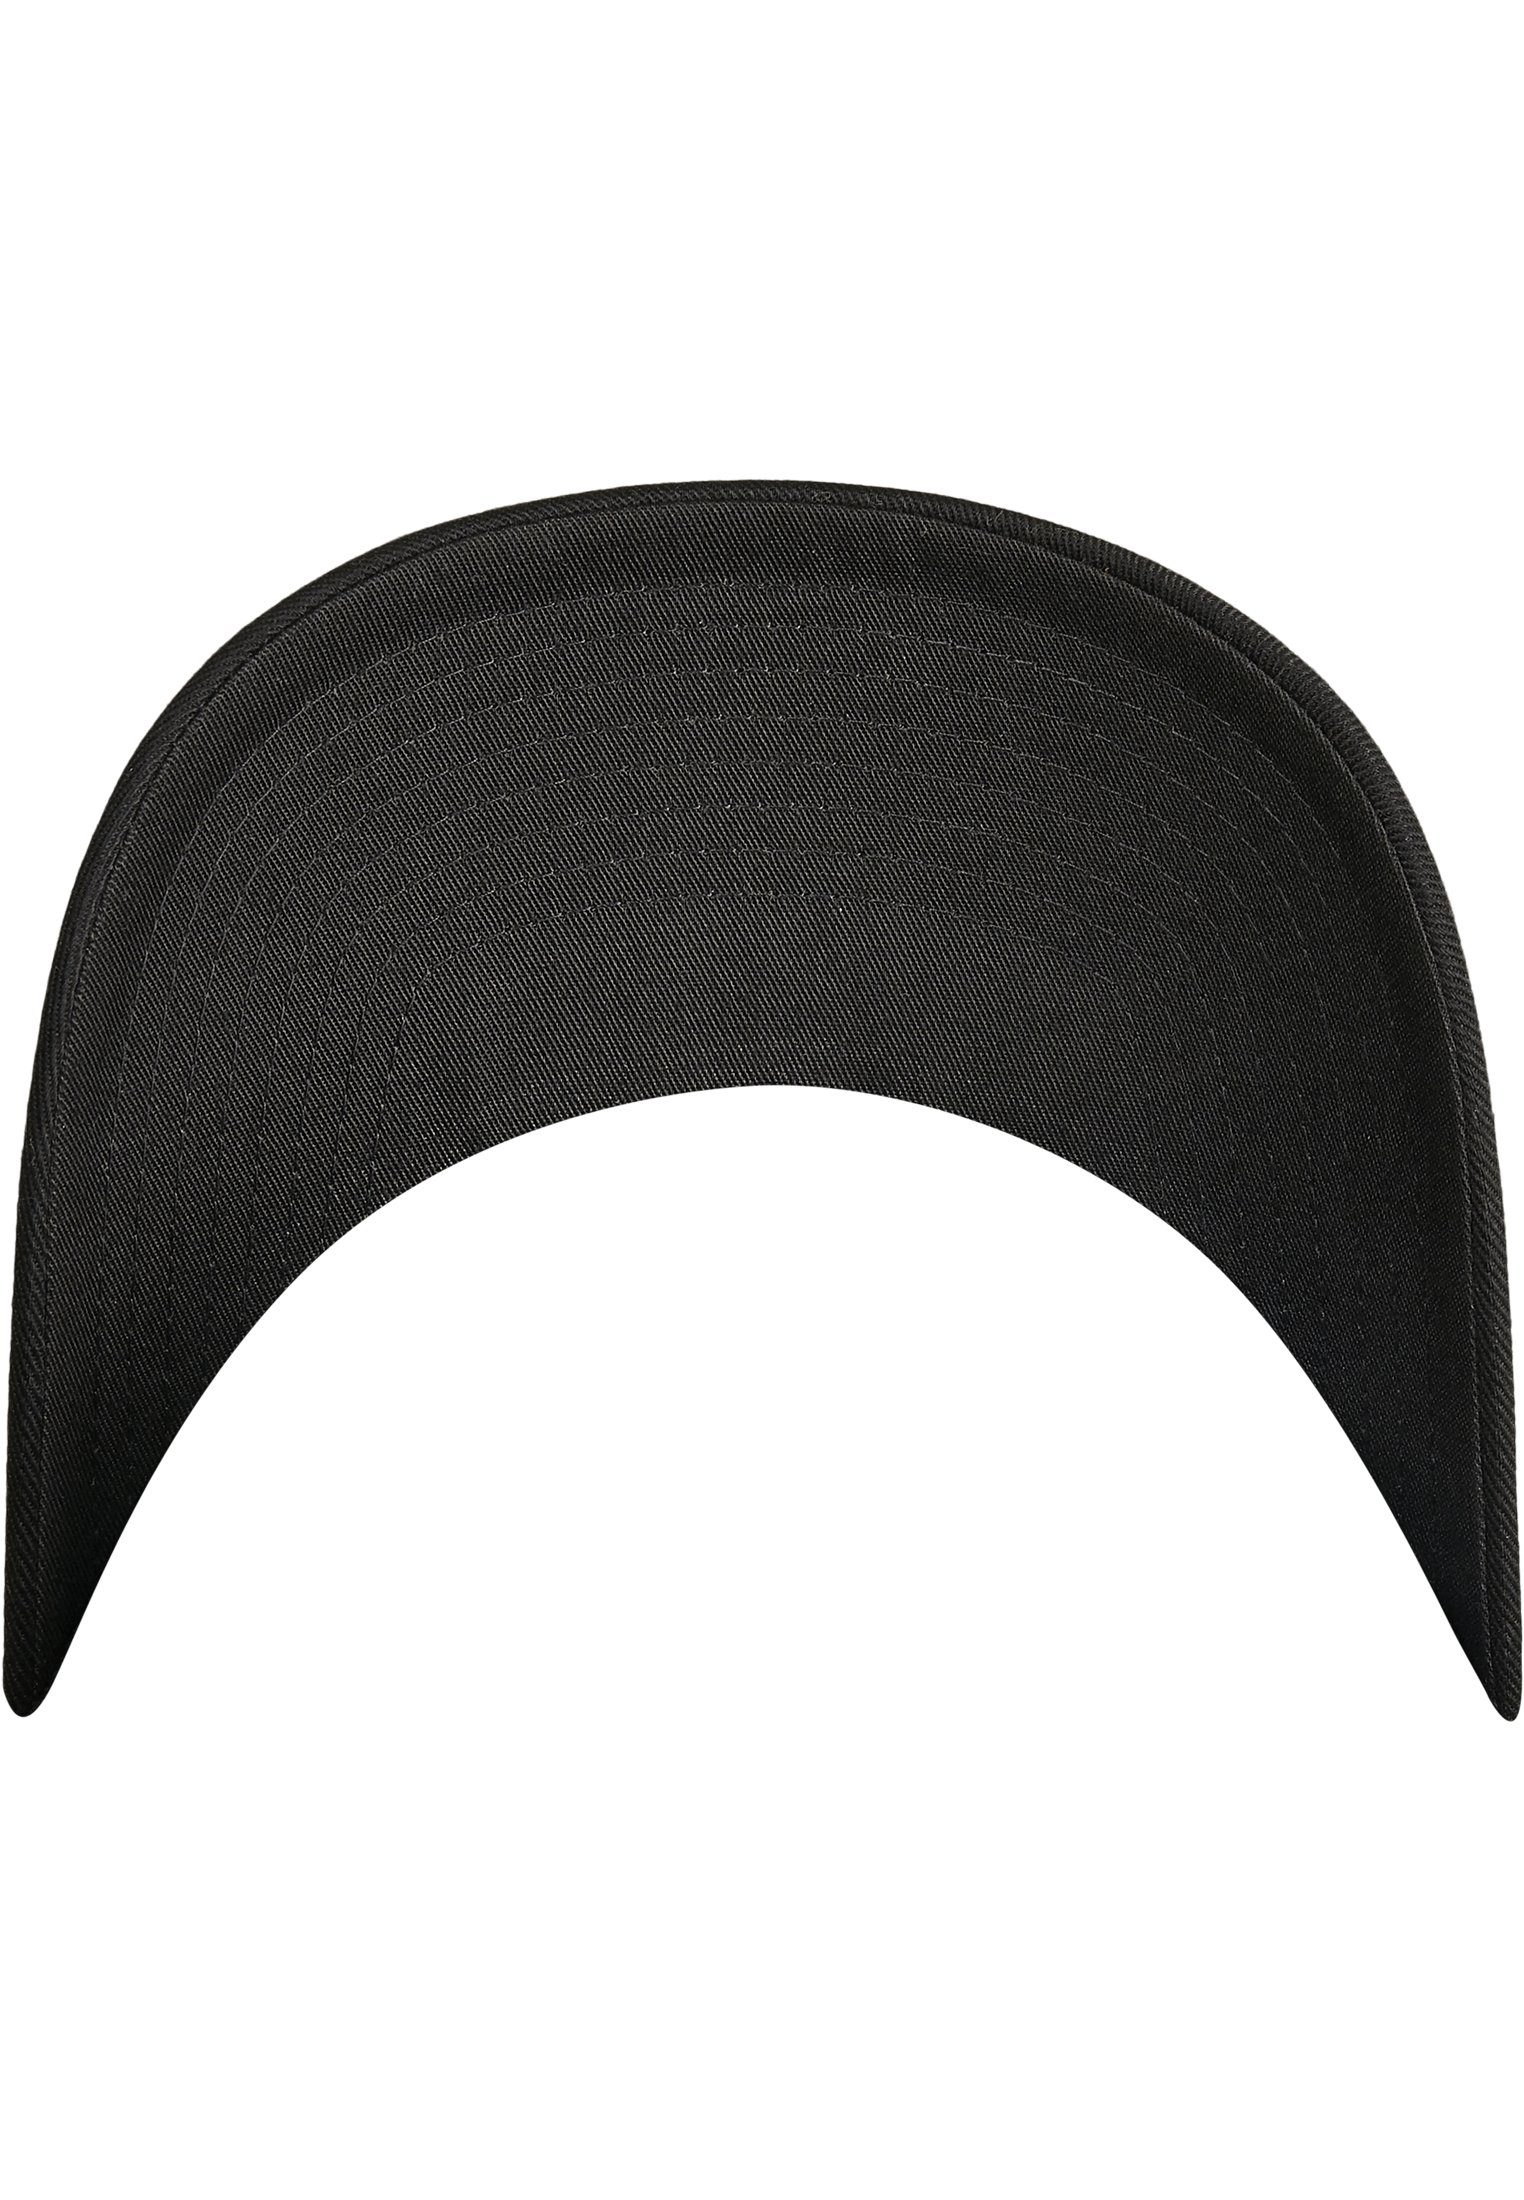 Flexfit Flex Cap Accessoires Flexfit black/black Combed Adjustable Wooly